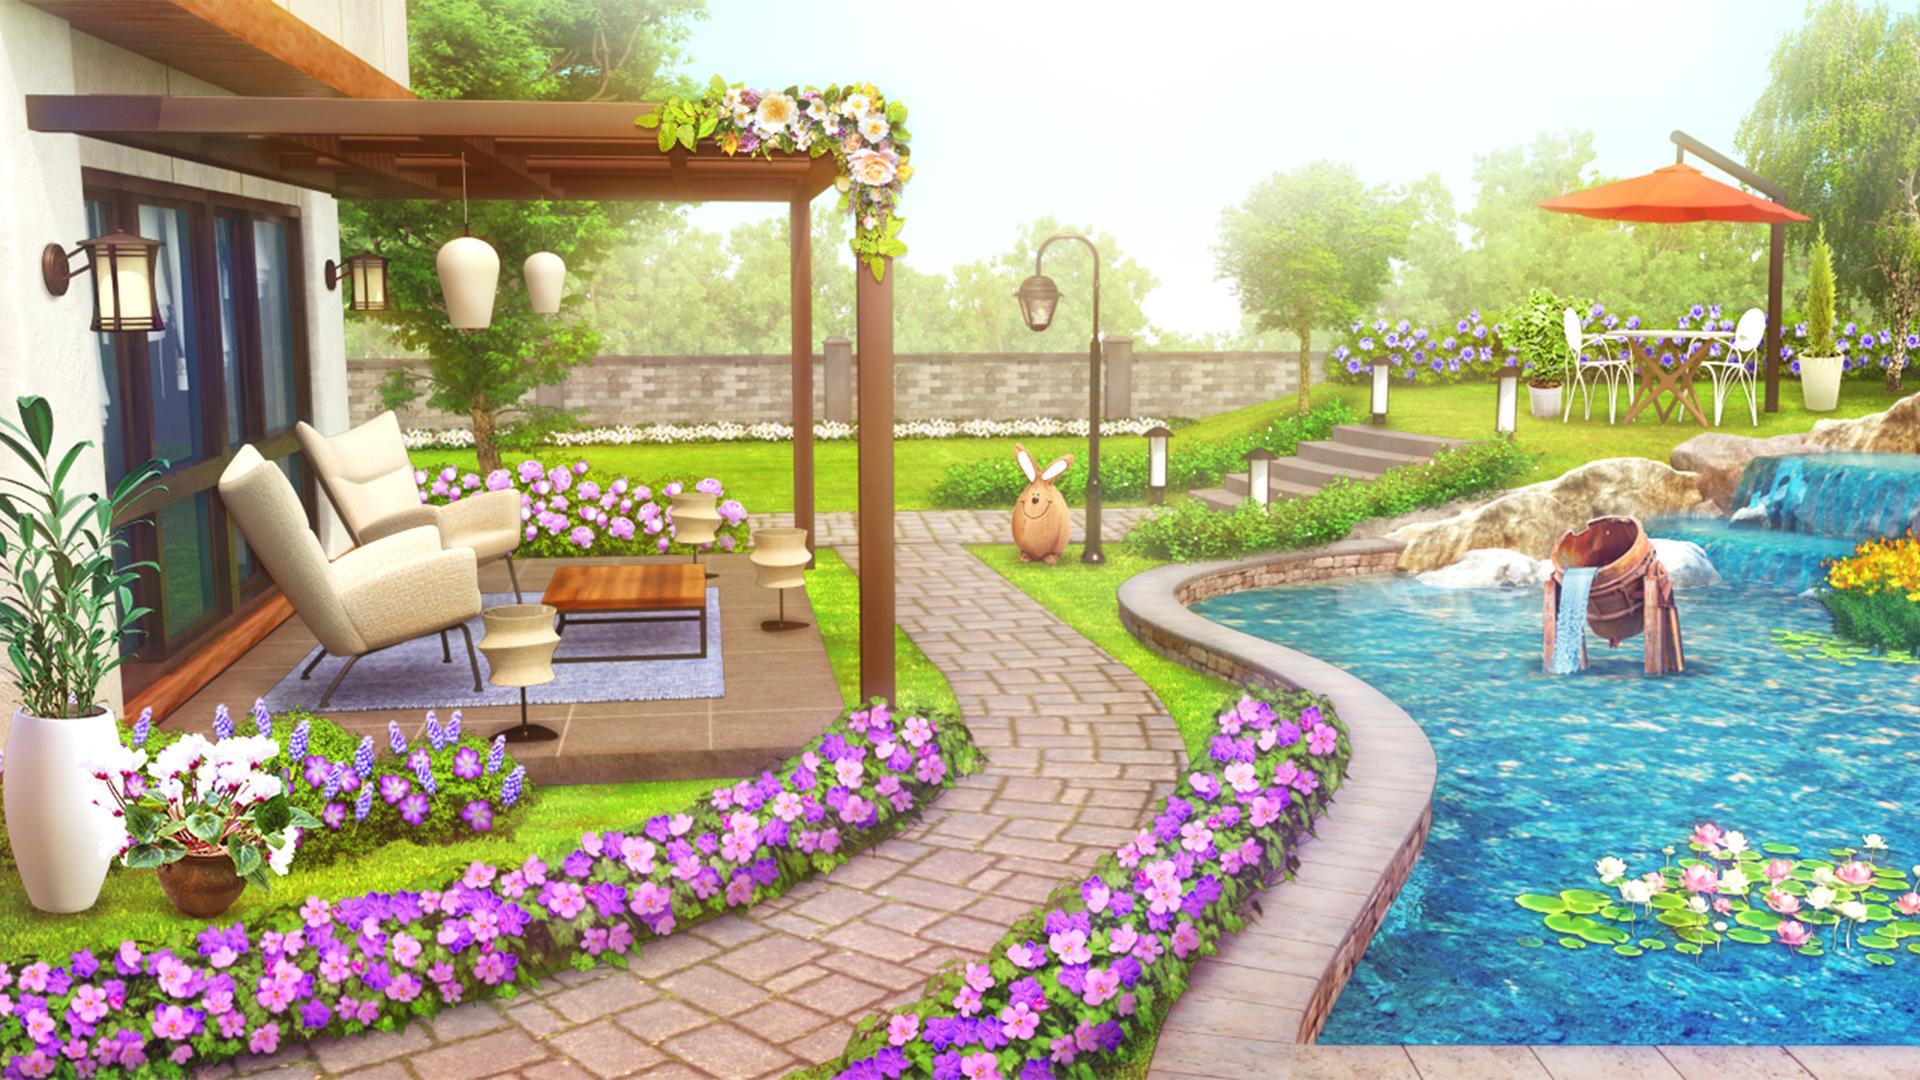 Screenshot 1 of Thiết kế nhà : Khu vườn trong mơ của tôi 1.45.1